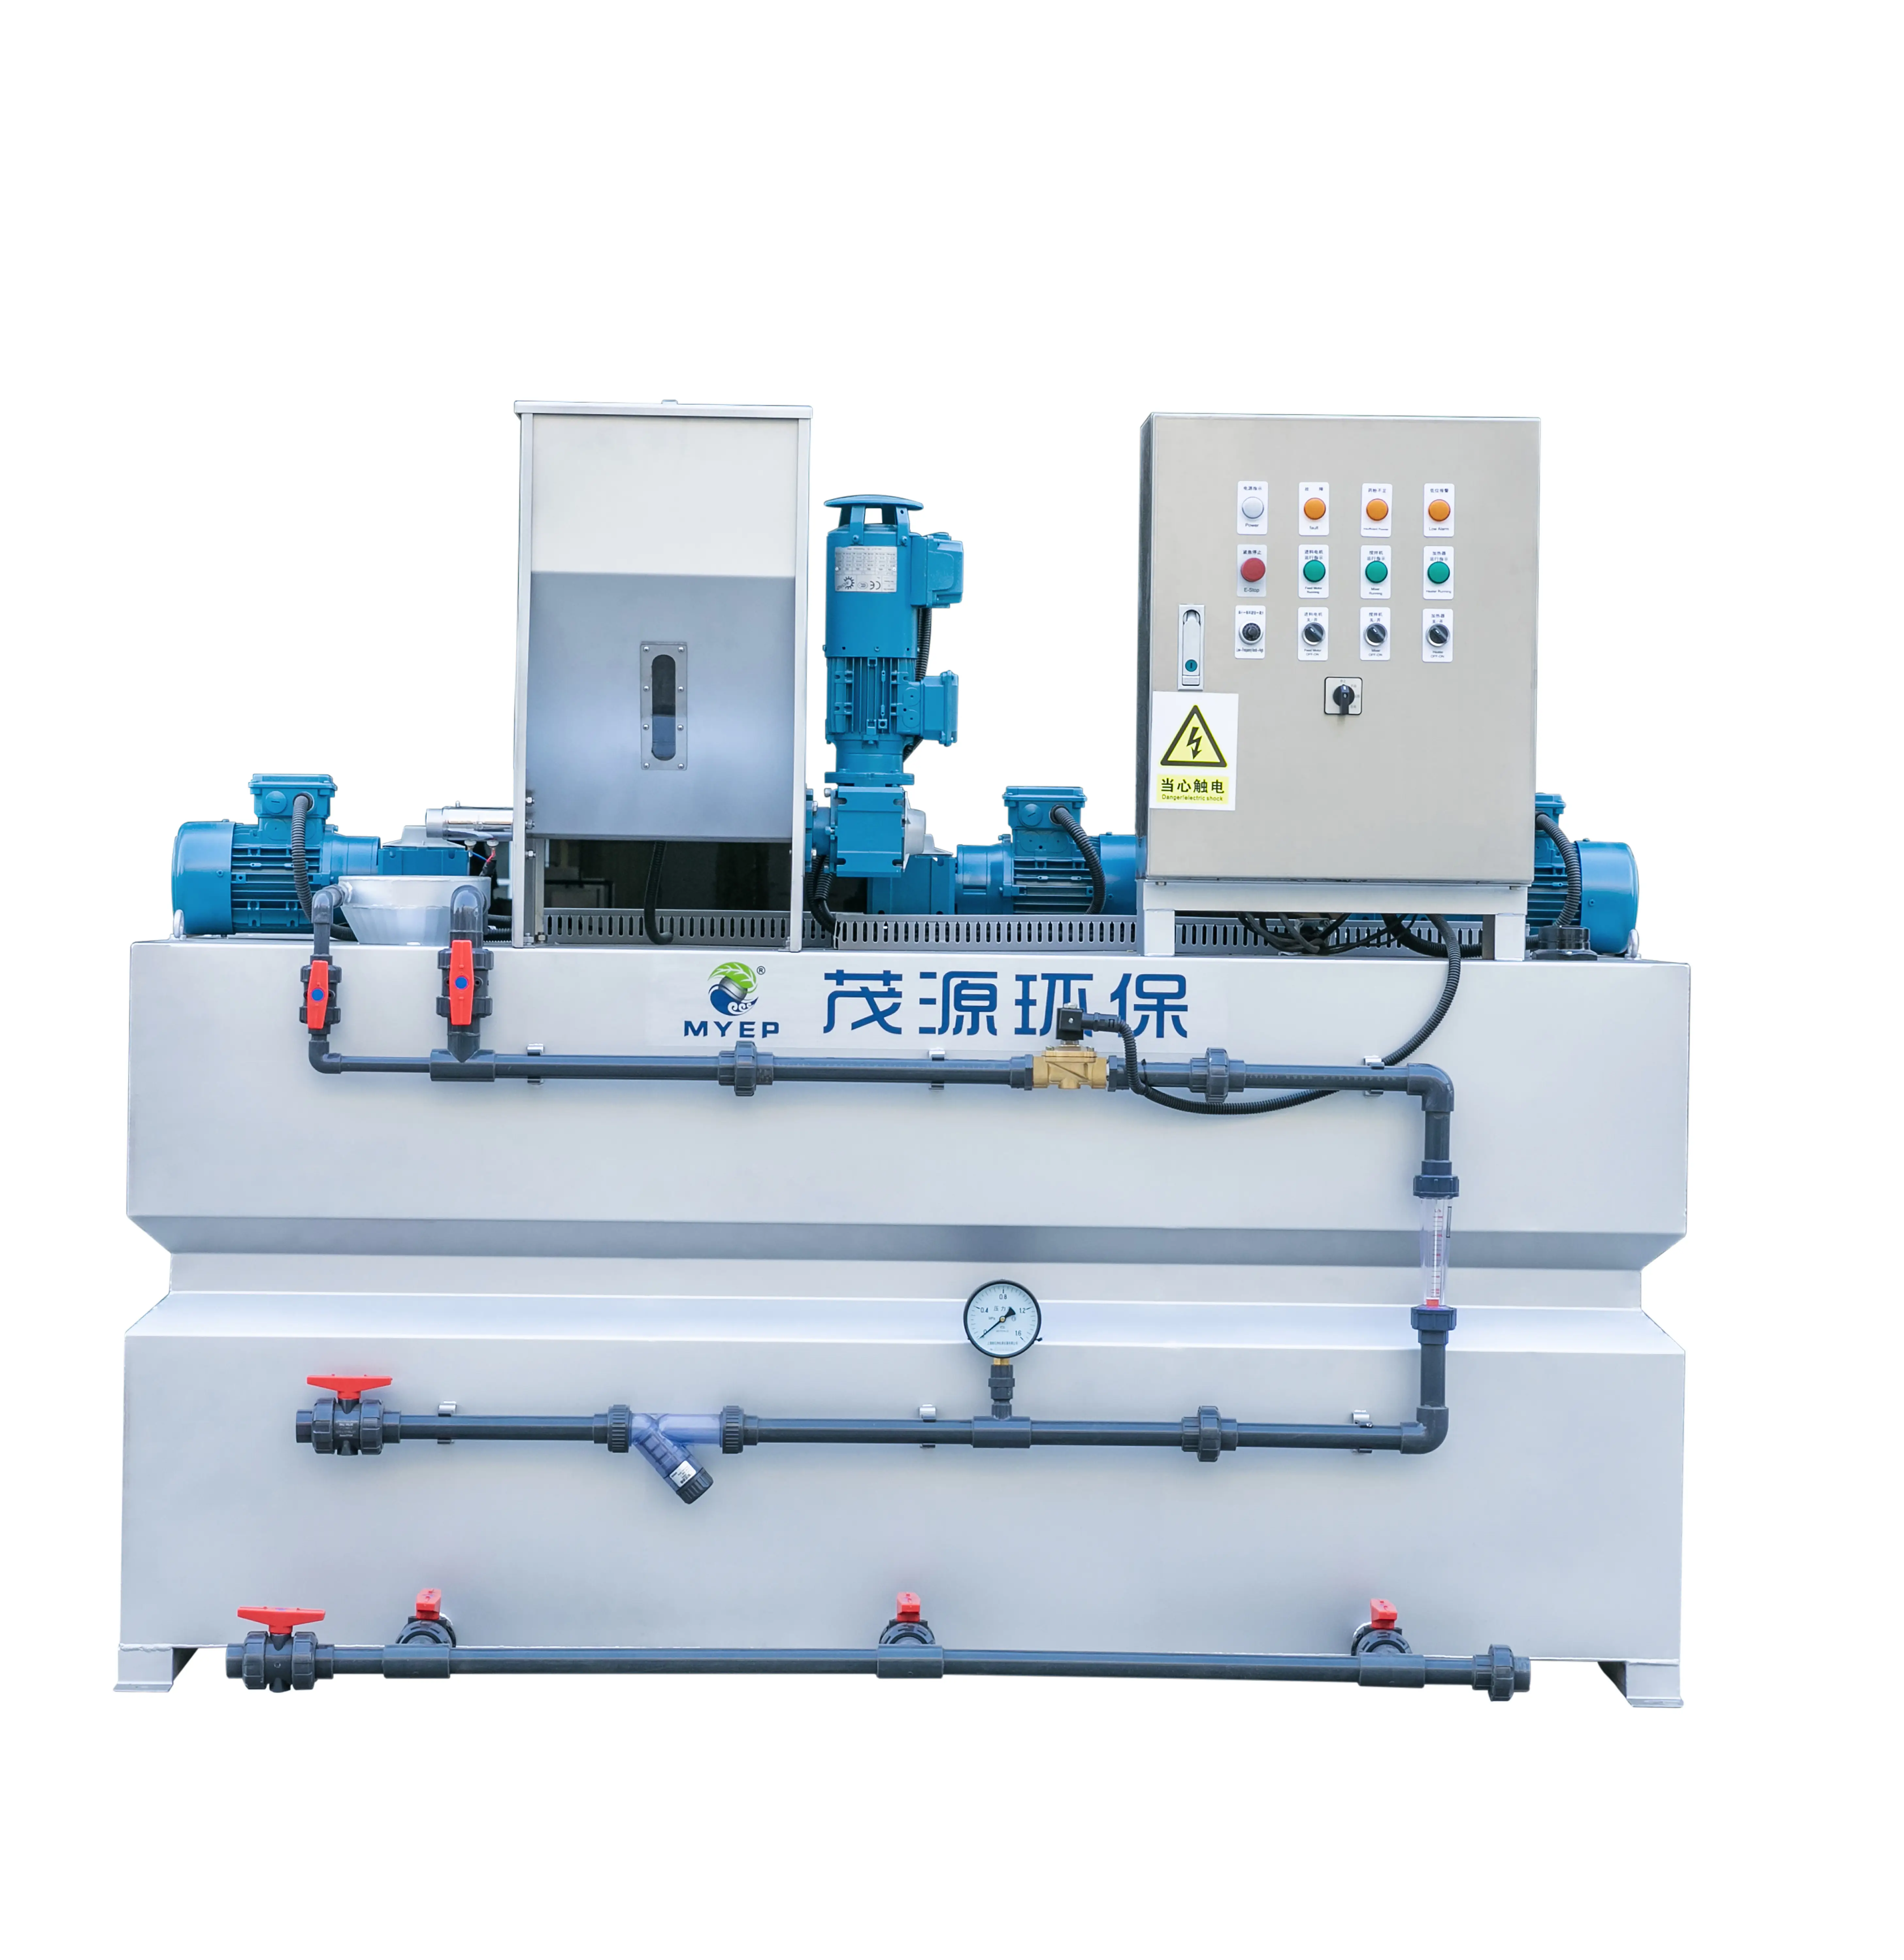 Polimer emülsiyon karıştırma tankı ekipmanları klor dozaj makinesi dozaj sistemi ünitesi su arıtma tesisi